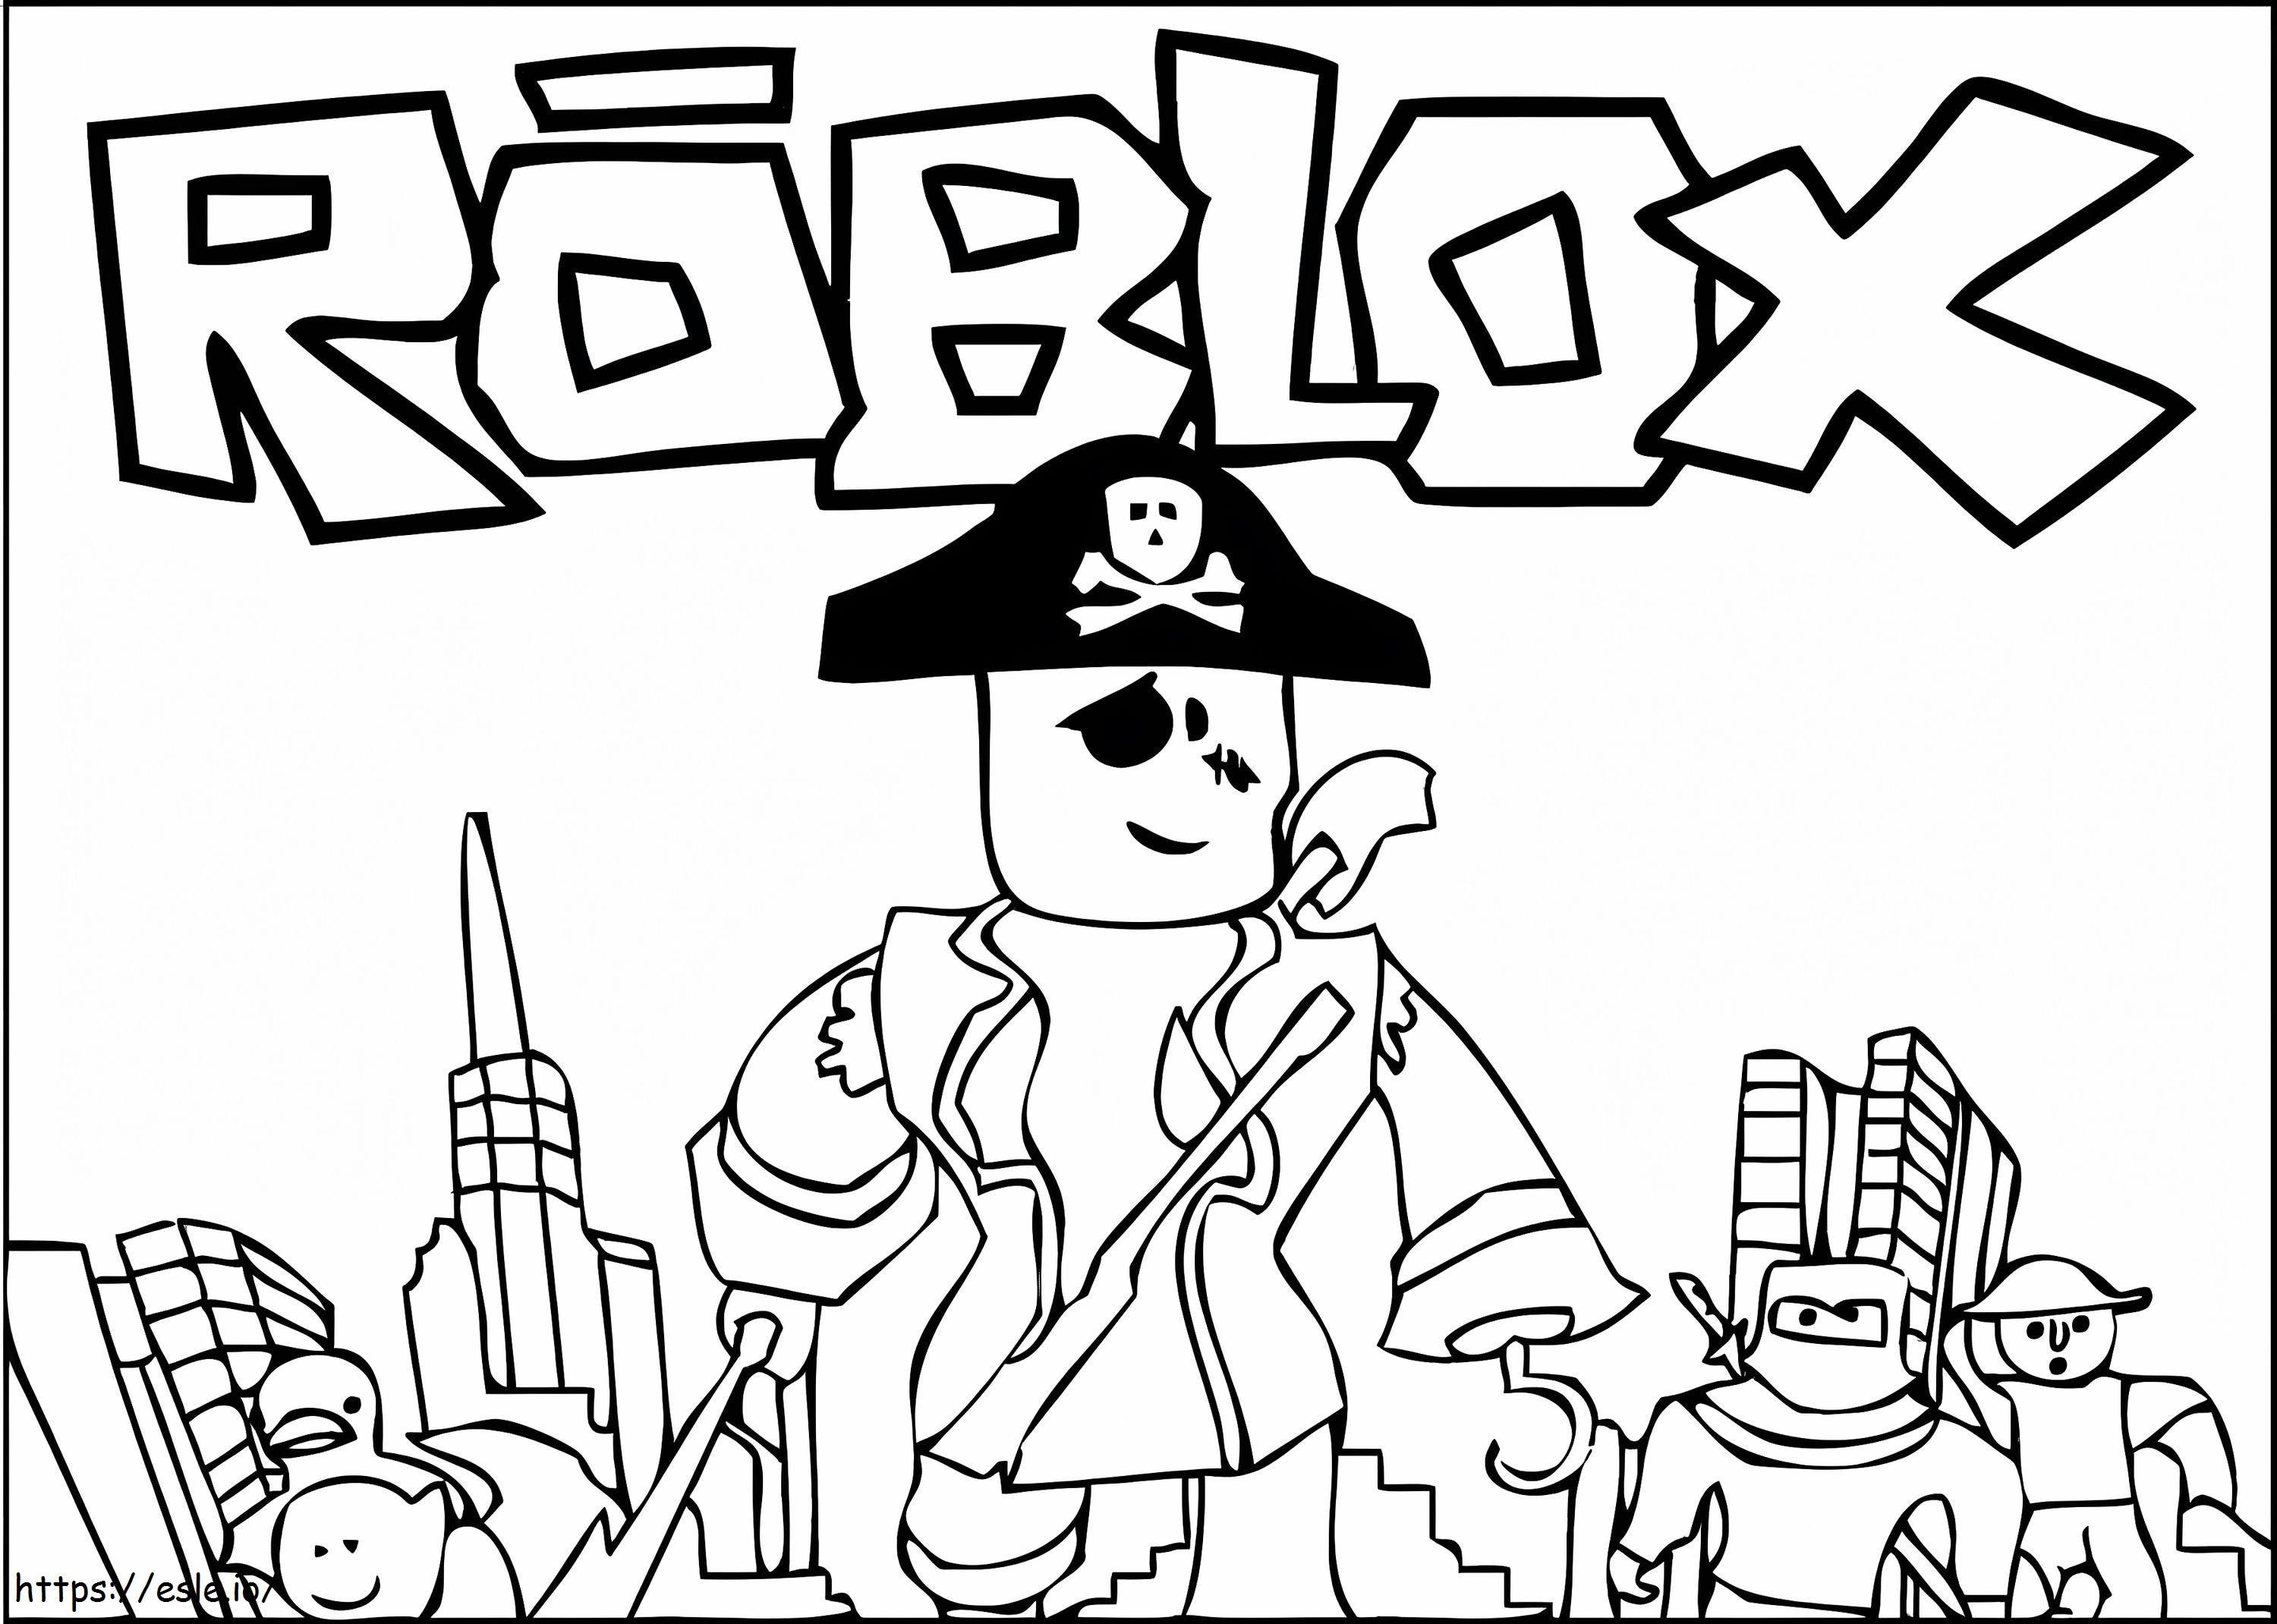 Pirata Roblox para colorear